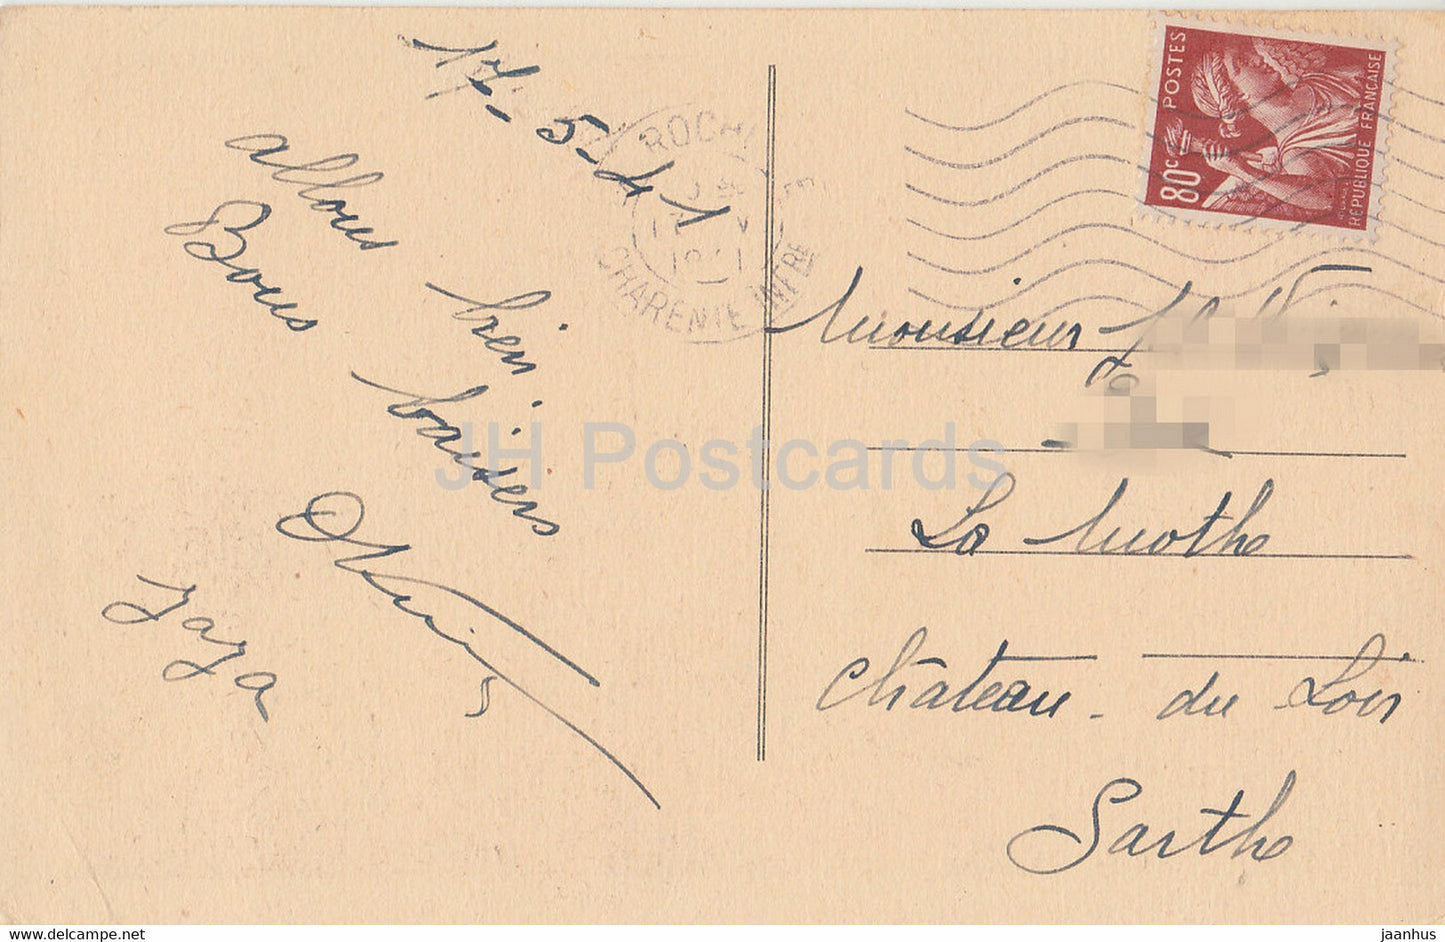 La Rochelle - L'Entrée du Port - bateau - navire - carte postale ancienne - 1941 - France - occasion